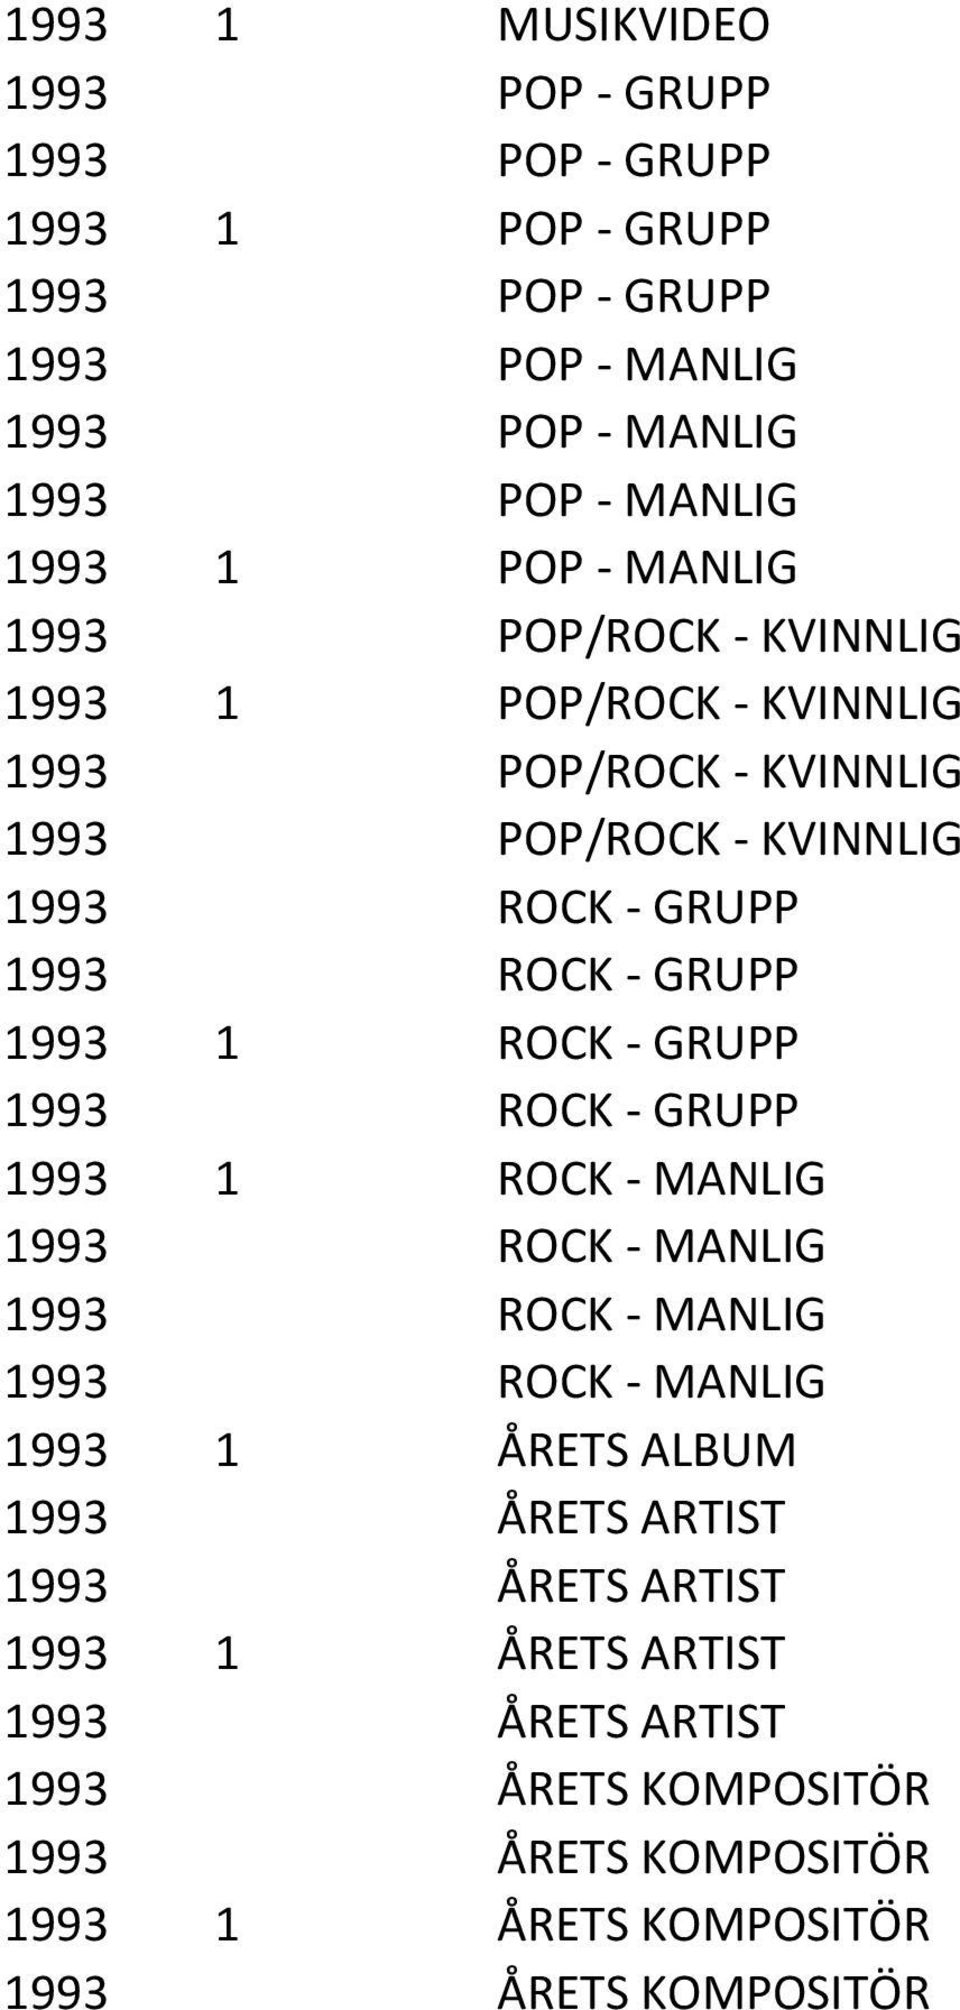 GRUPP 1993 1 ROCK - GRUPP 1993 ROCK - GRUPP 1993 1 ROCK - MANLIG 1993 ROCK - MANLIG 1993 ROCK - MANLIG 1993 ROCK - MANLIG 1993 1 ÅRETS ALBUM 1993